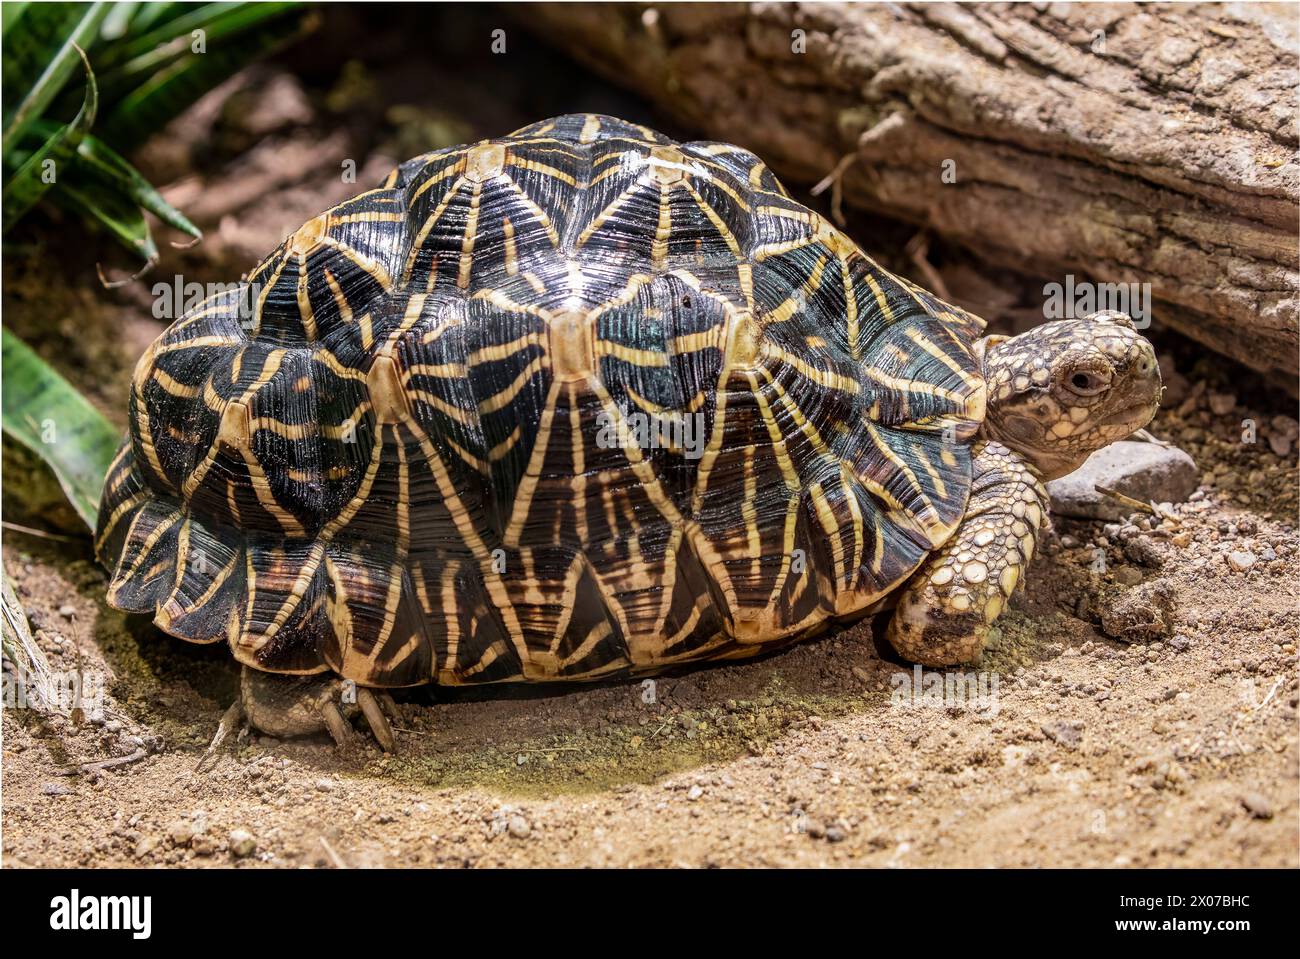 La tartaruga stella indiana (Geochelone elegans) è una specie di tartaruga minacciata originaria dell'India, del Pakistan e dello Sri Lanka, dove vive in aree aride Foto Stock